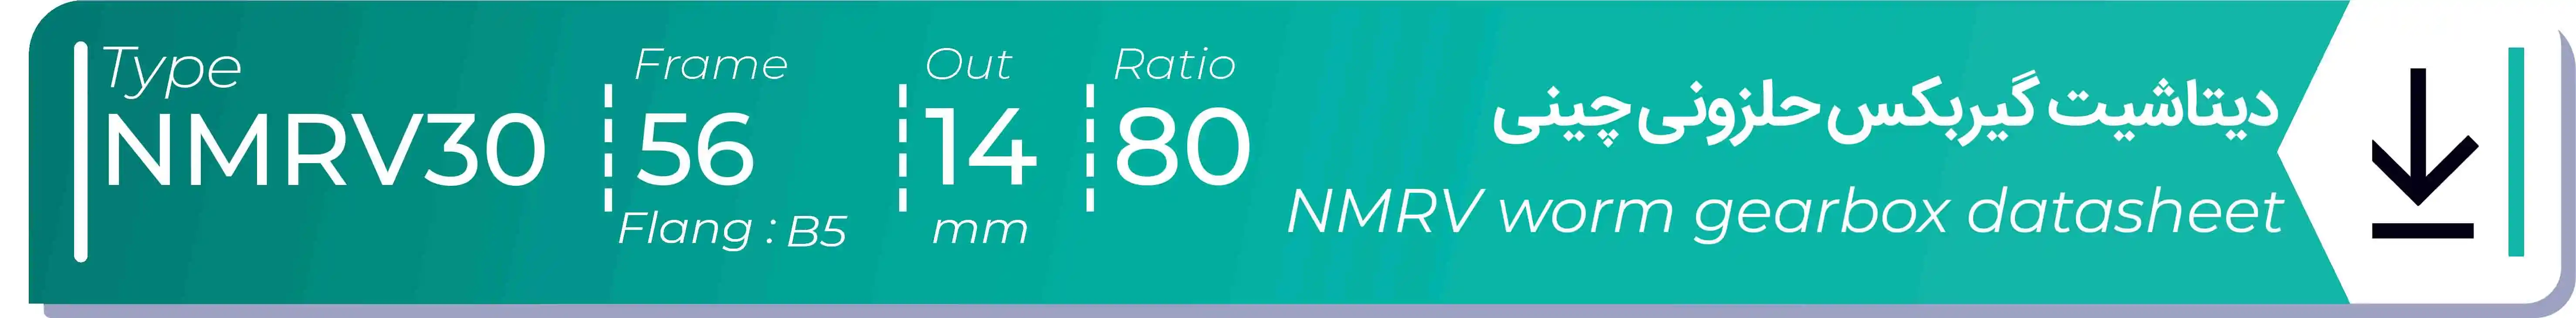  دیتاشیت و مشخصات فنی گیربکس حلزونی چینی   NMRV30  -  با خروجی 14- میلی متر و نسبت80